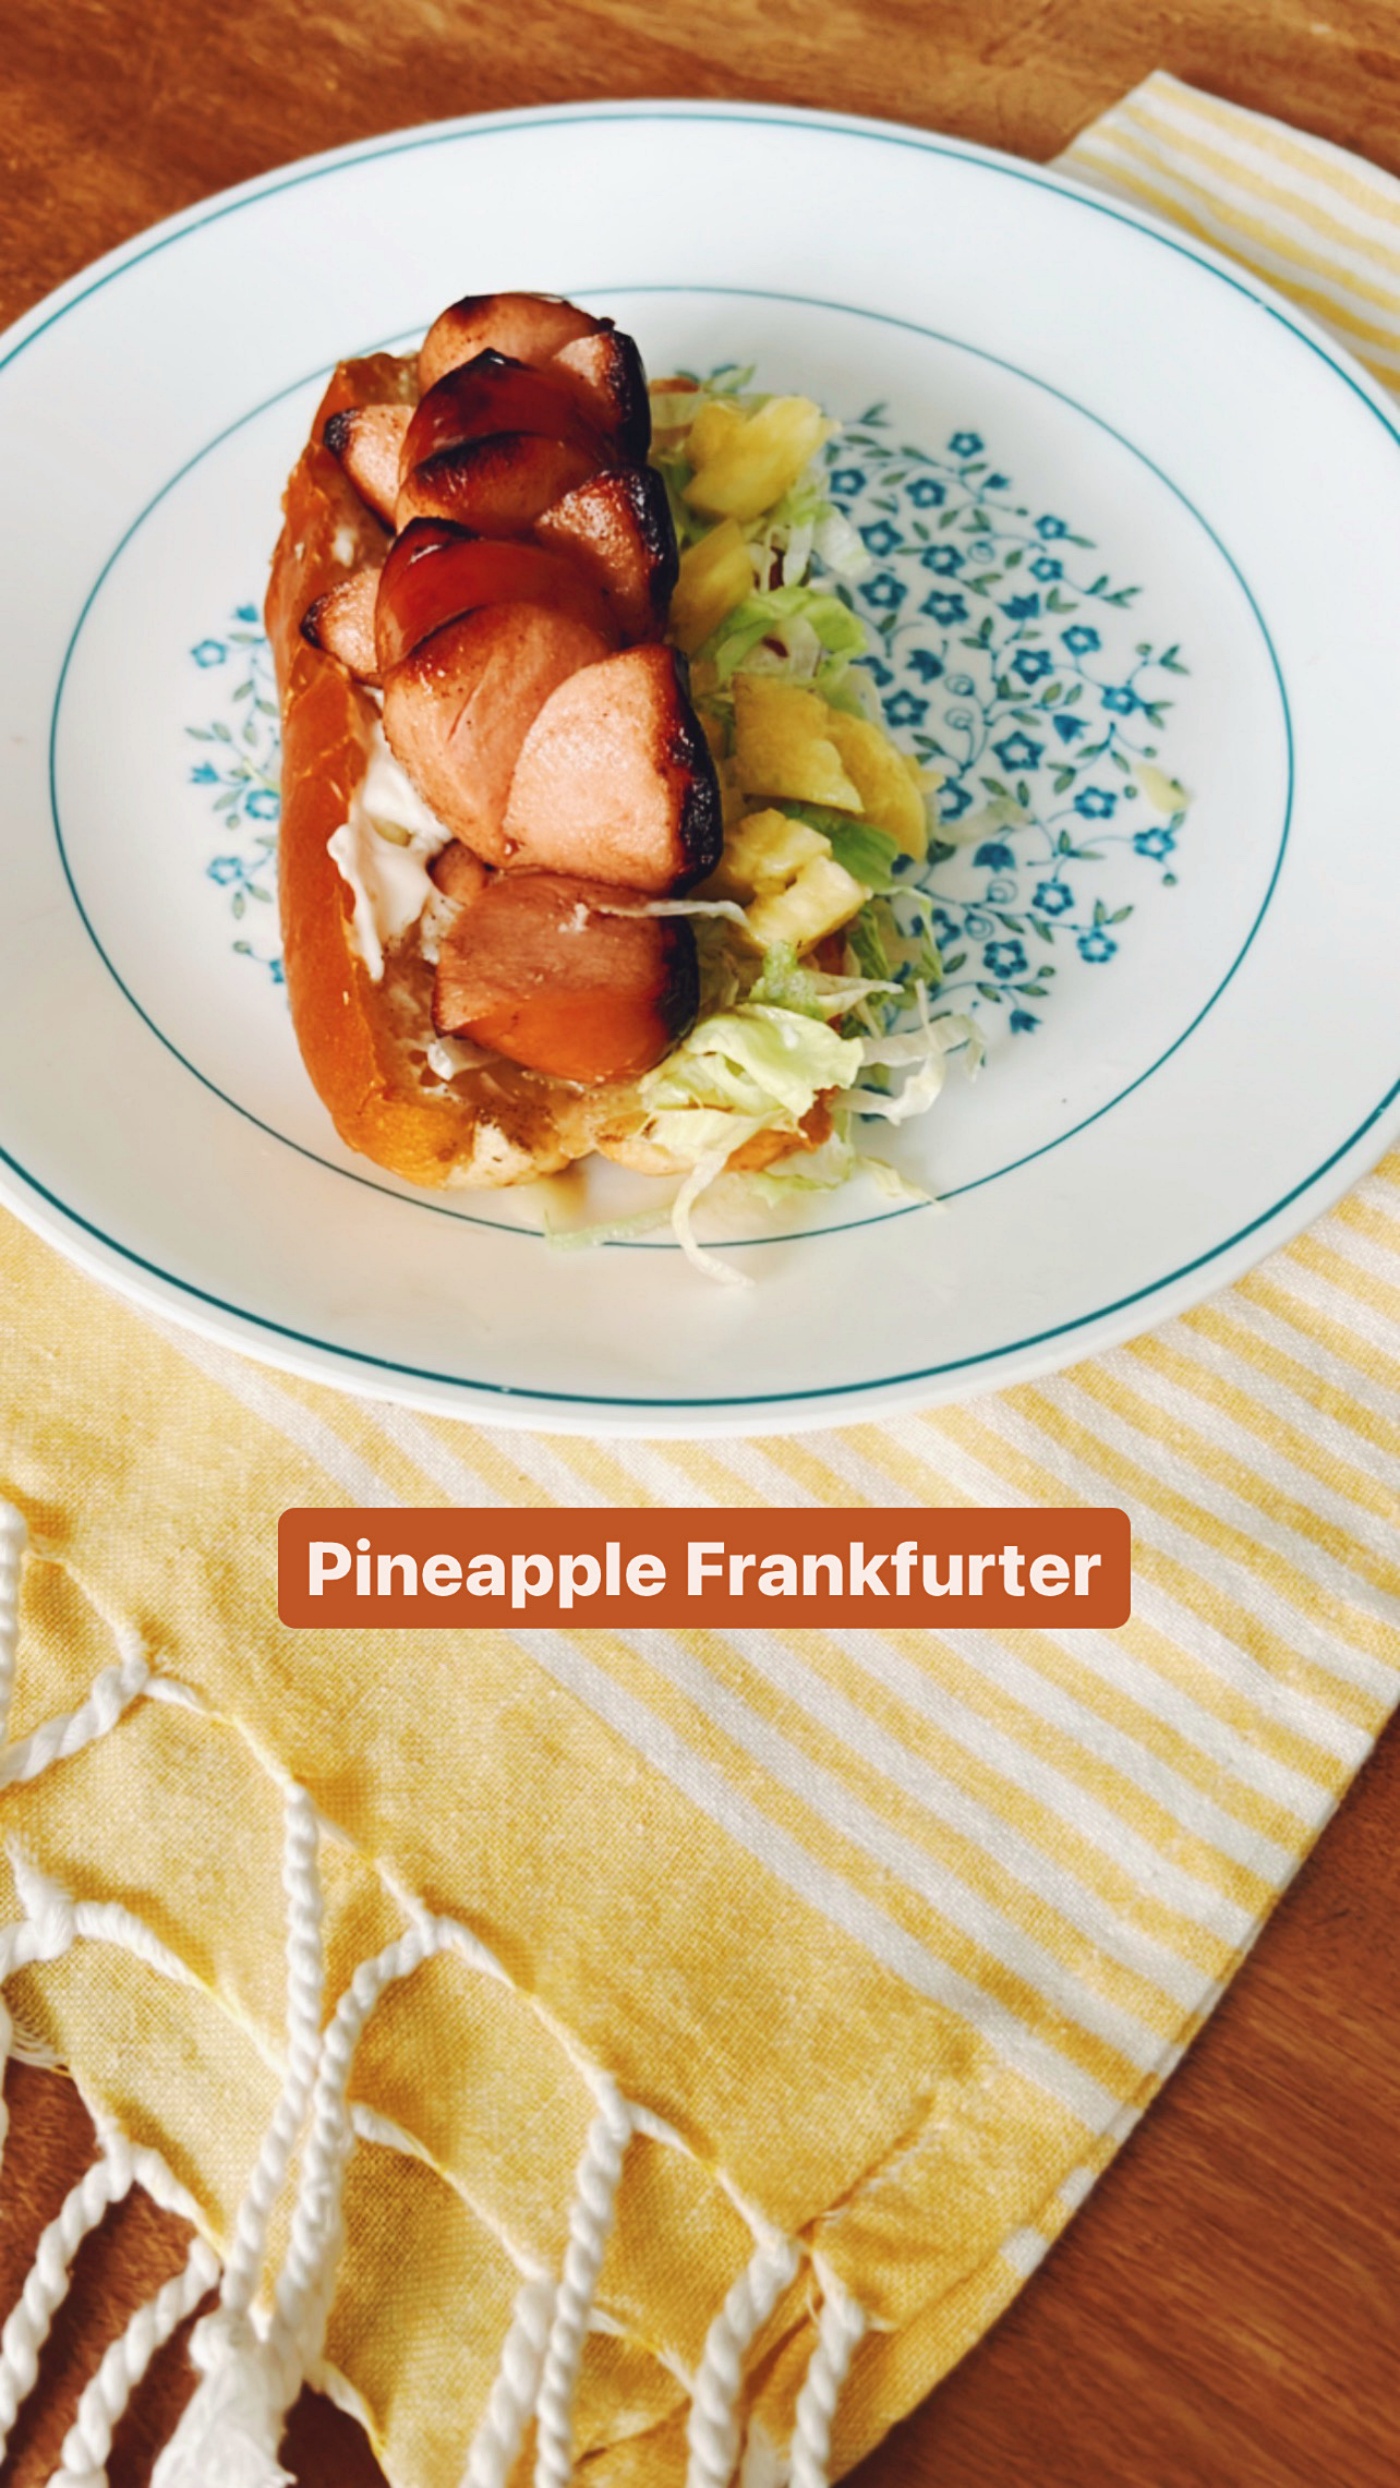 Pineapple Frankfurter